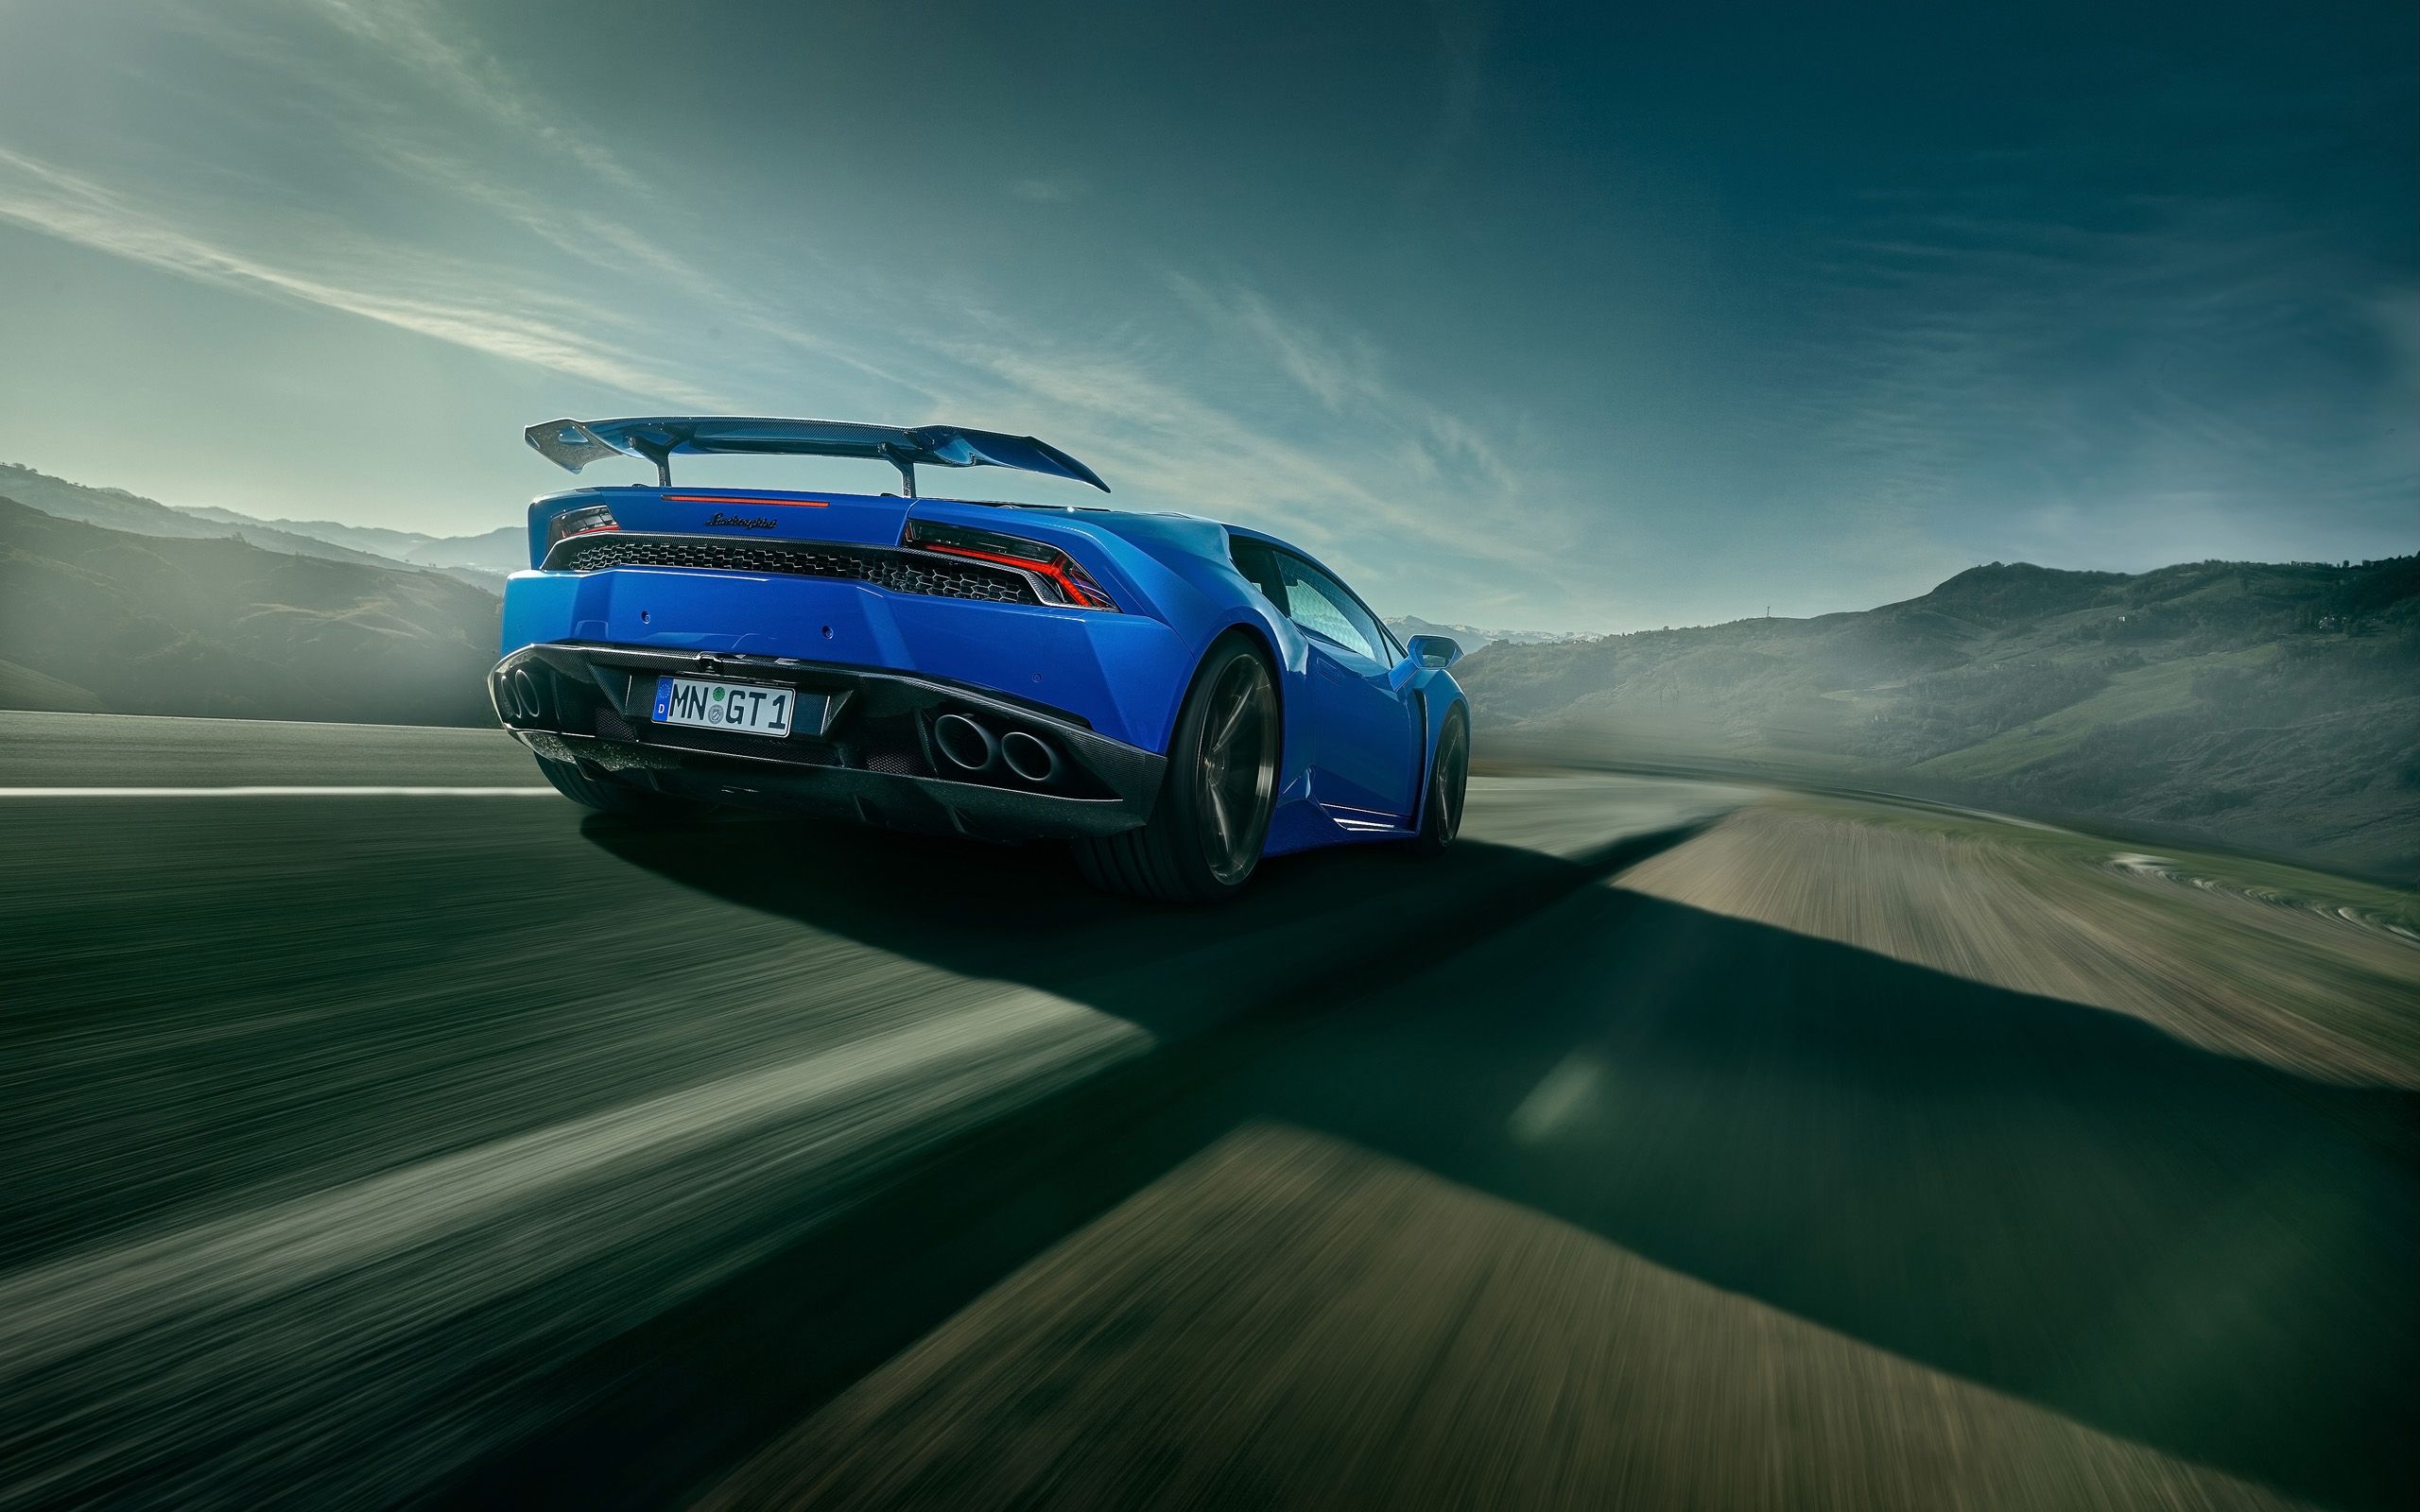 Lamborghini Wallpapers | Lamborghini Pictures | Lamborghini HD ...